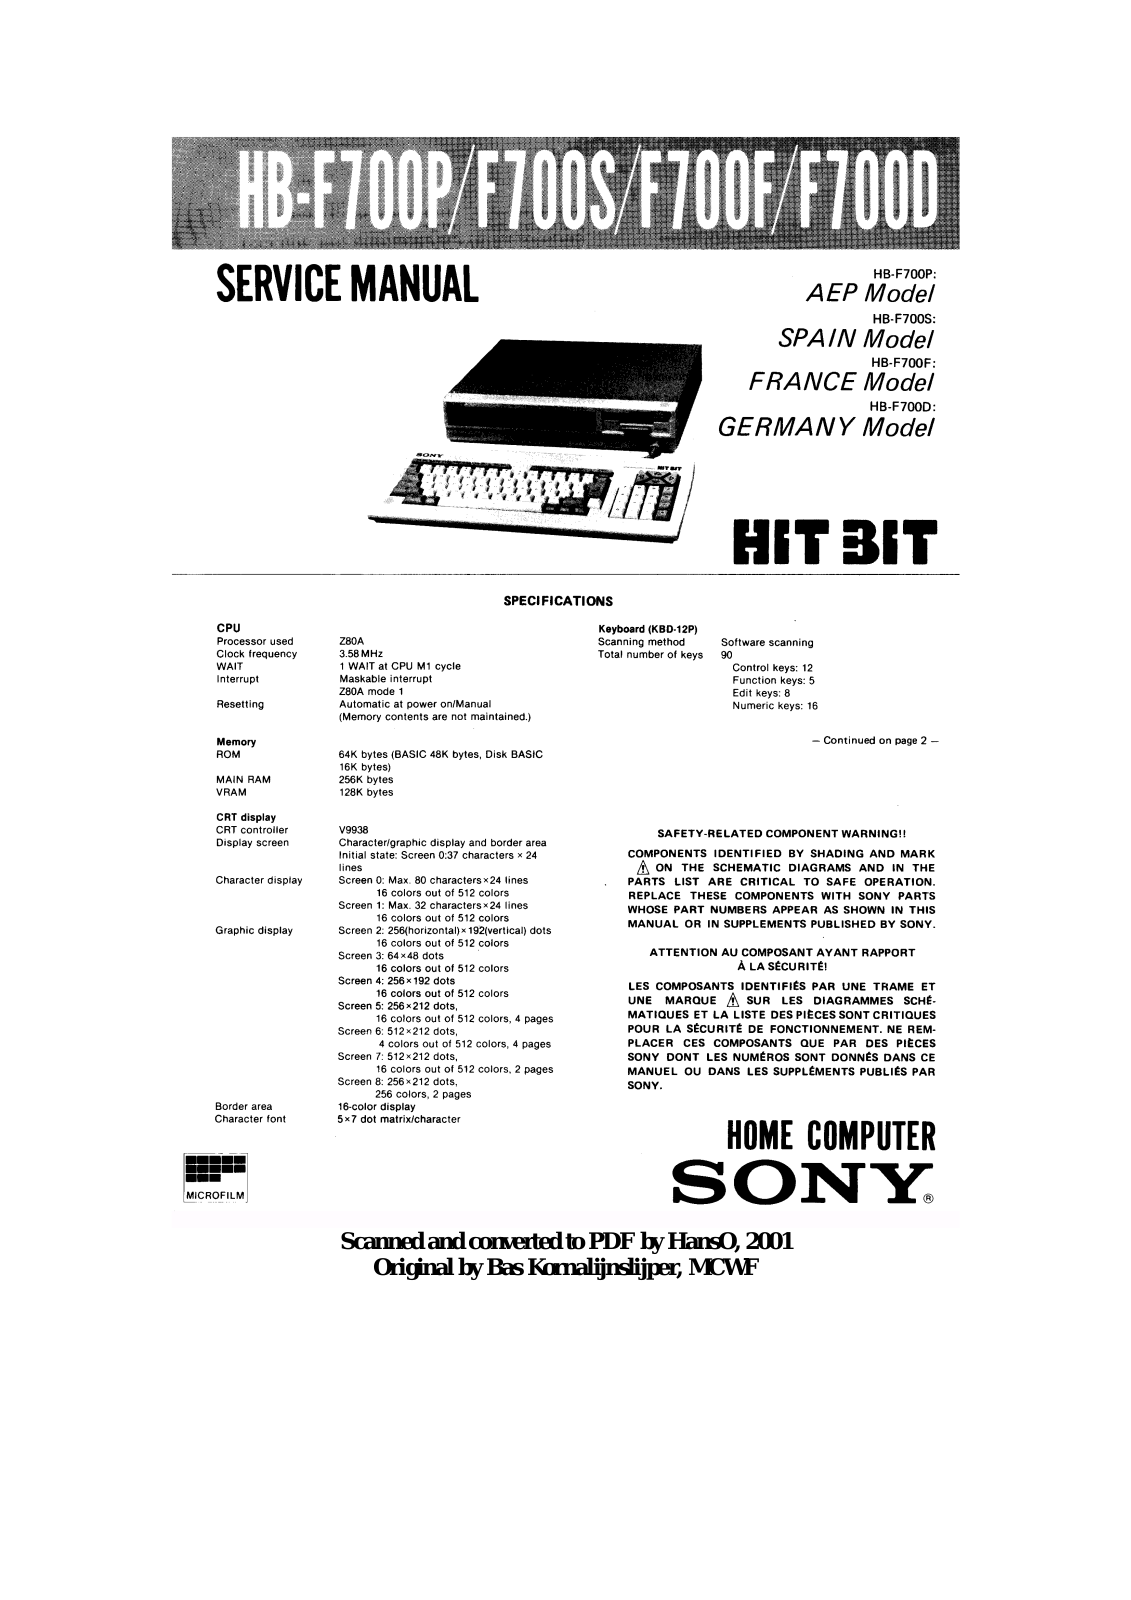 Sony HB-F700D, HB-F700F, HB-F700S, HB-F700P Service Manual